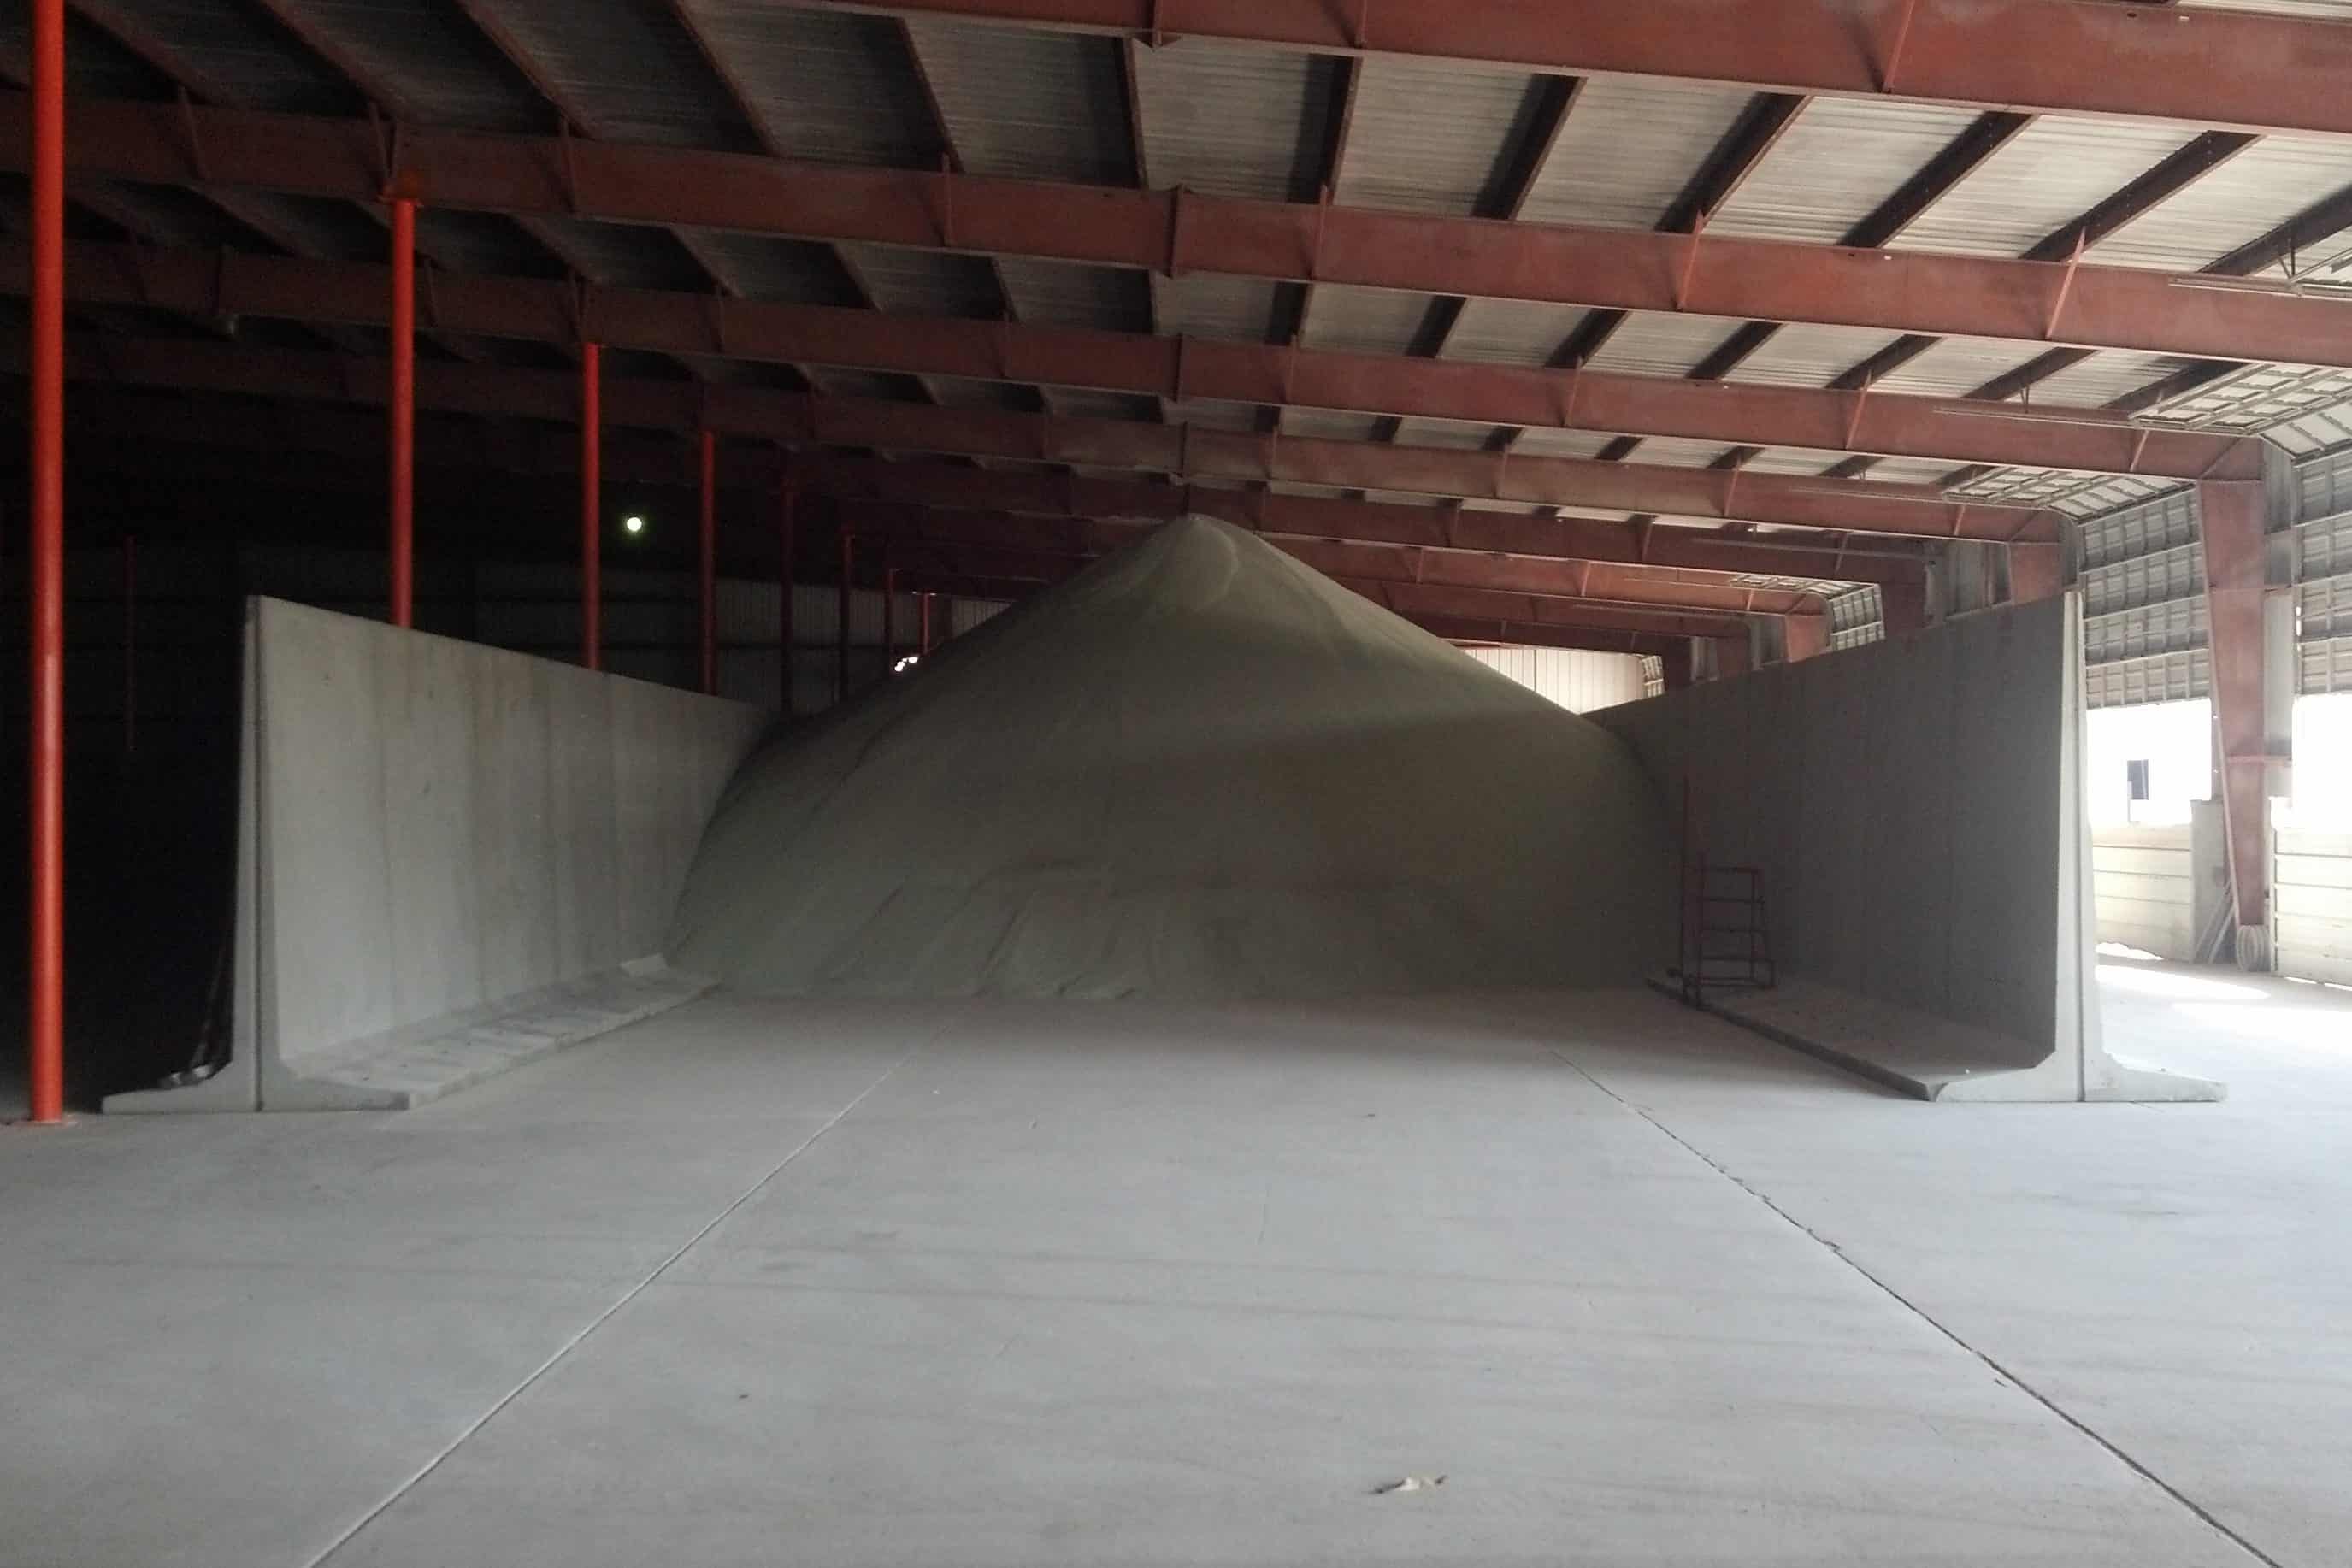 Bunker Silo Indoor Aggregate Storage Precast Concrete